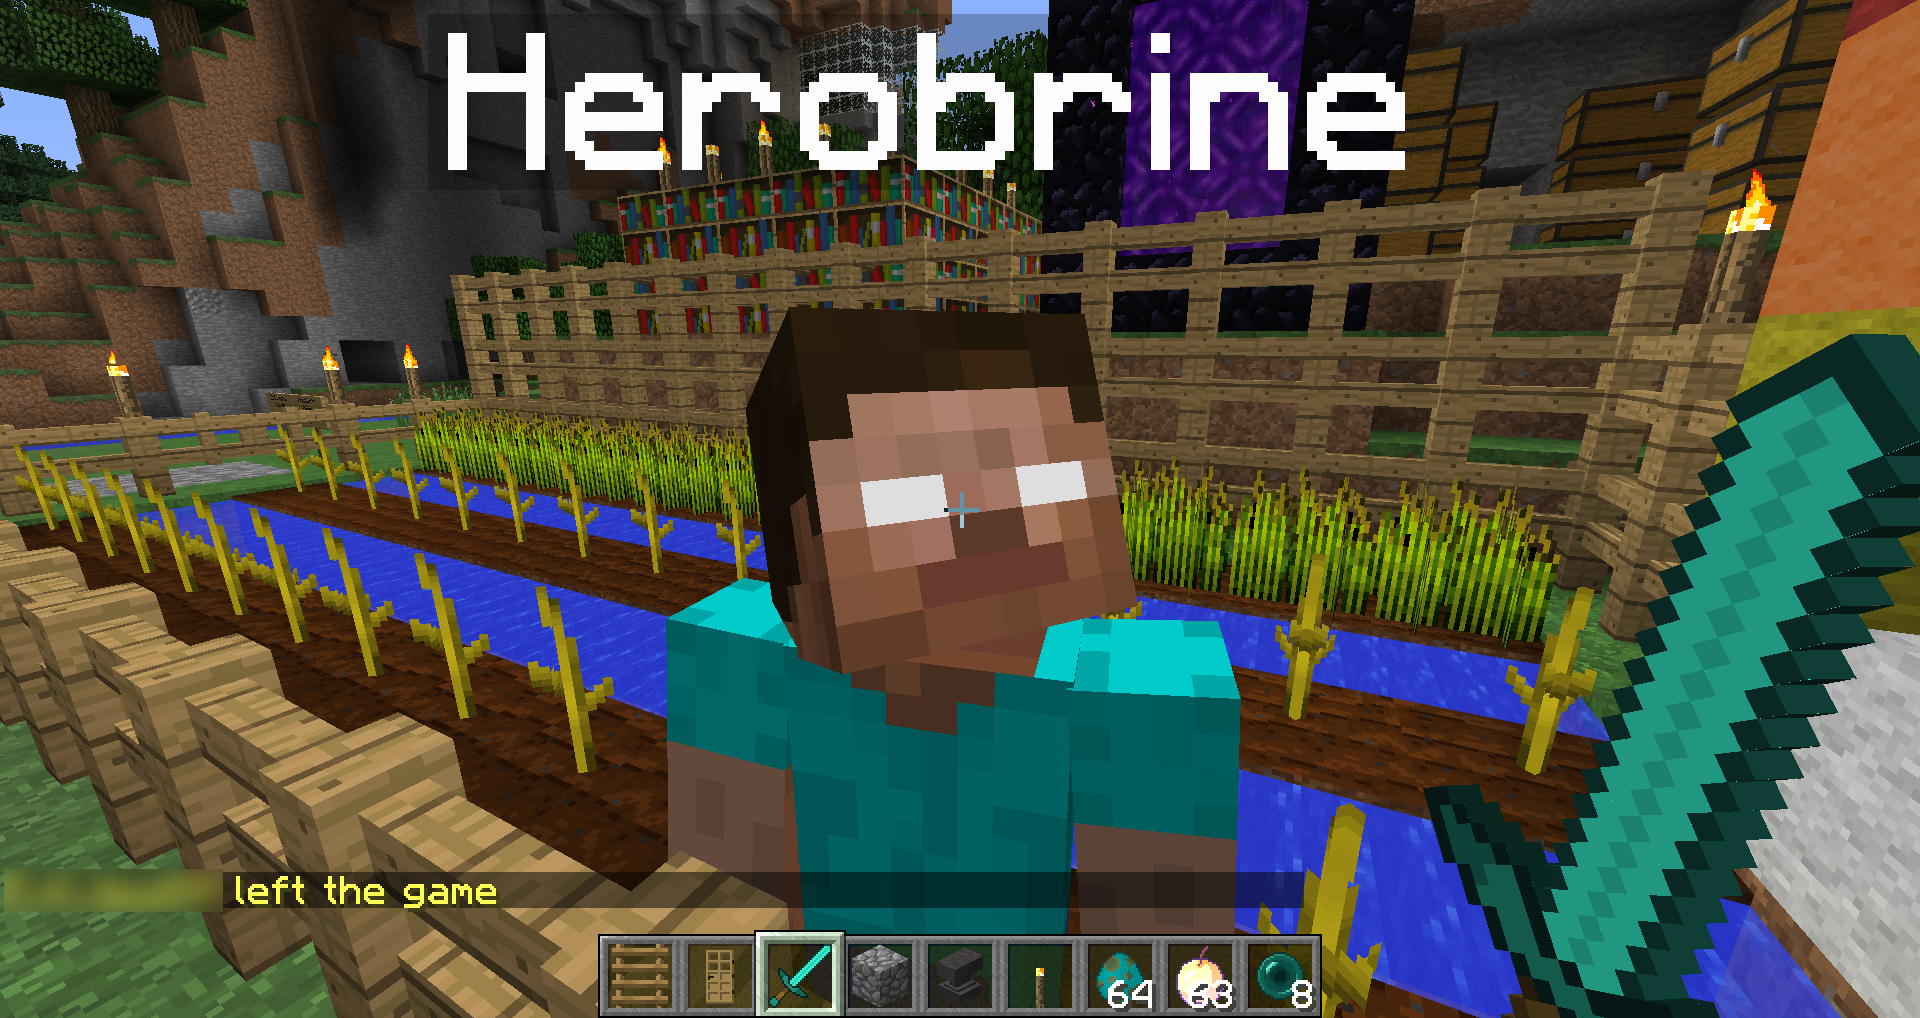 I never knew herobrine was on Xbox 360 : r/Minecraft